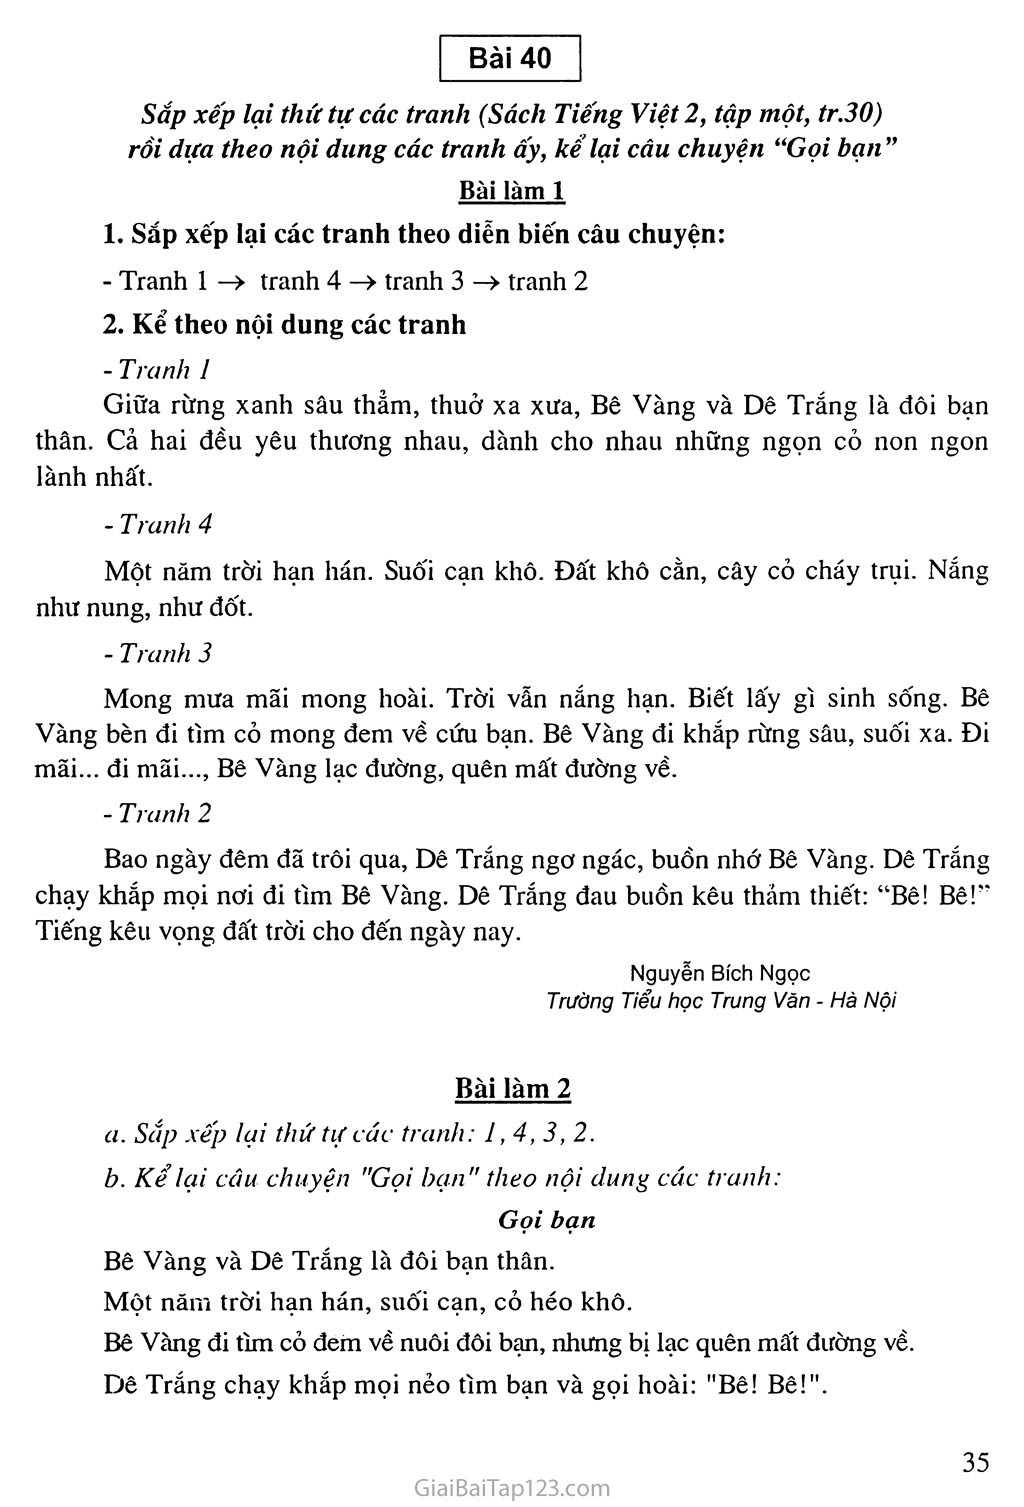 Bài 40: Sắp xếp lại thứ tự các tranh (Sách Tiếng Việt 2, tập một tr.30) rồi dựa theo nội dung các tranh ấy, kể lại câu chuyện “Gọi bạn” trang 1